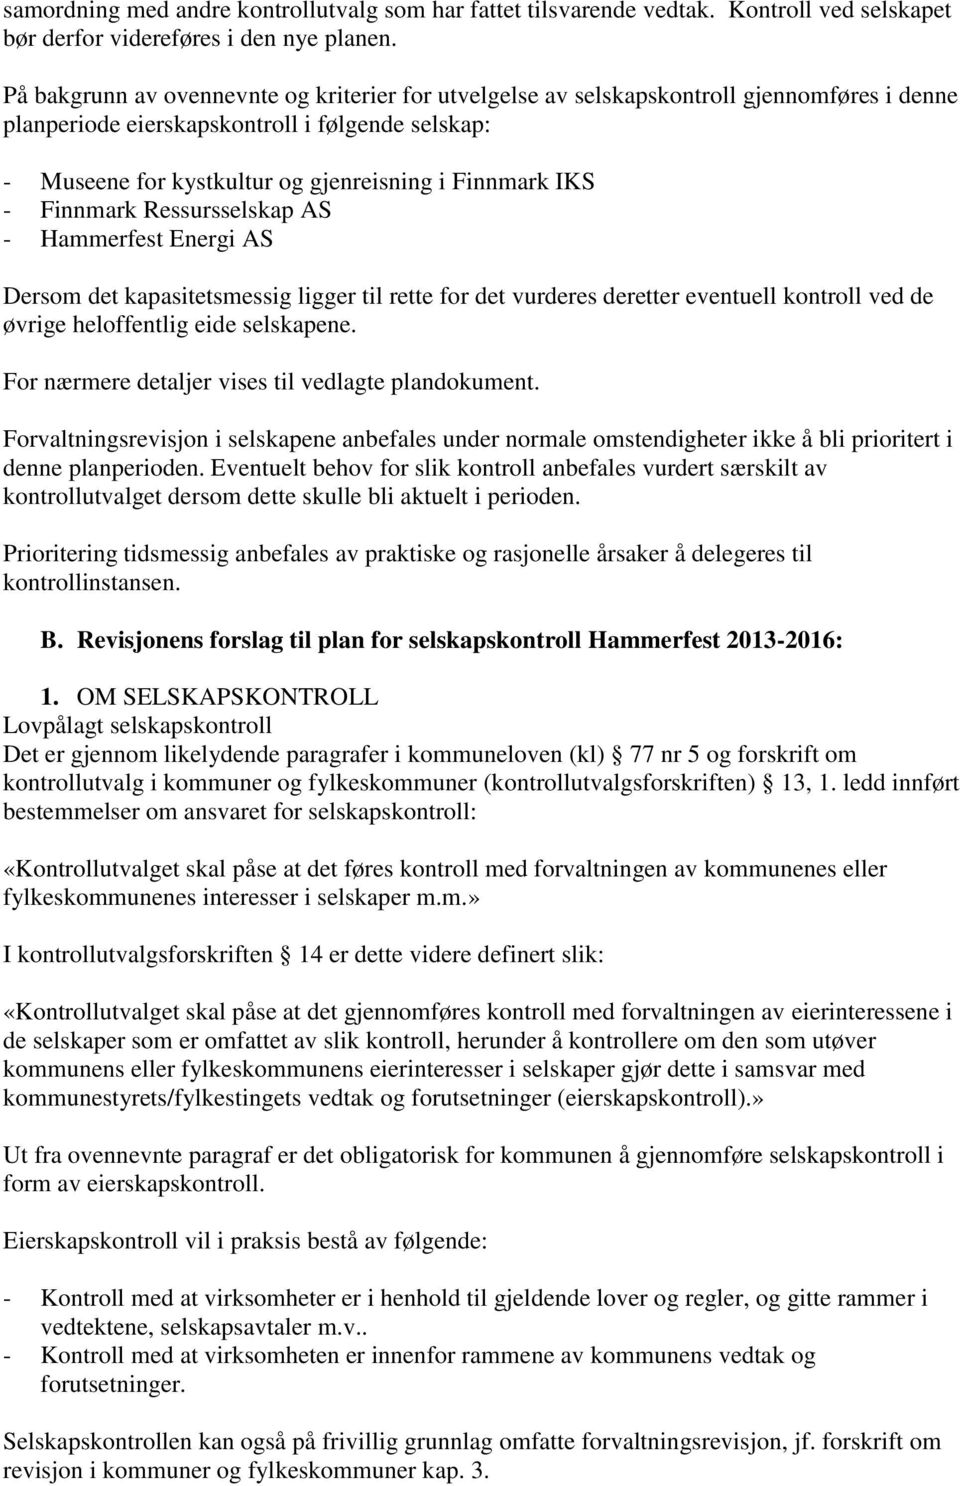 IKS - Finnmark Ressursselskap AS - Hammerfest Energi AS Dersom det kapasitetsmessig ligger til rette for det vurderes deretter eventuell kontroll ved de øvrige heloffentlig eide selskapene.